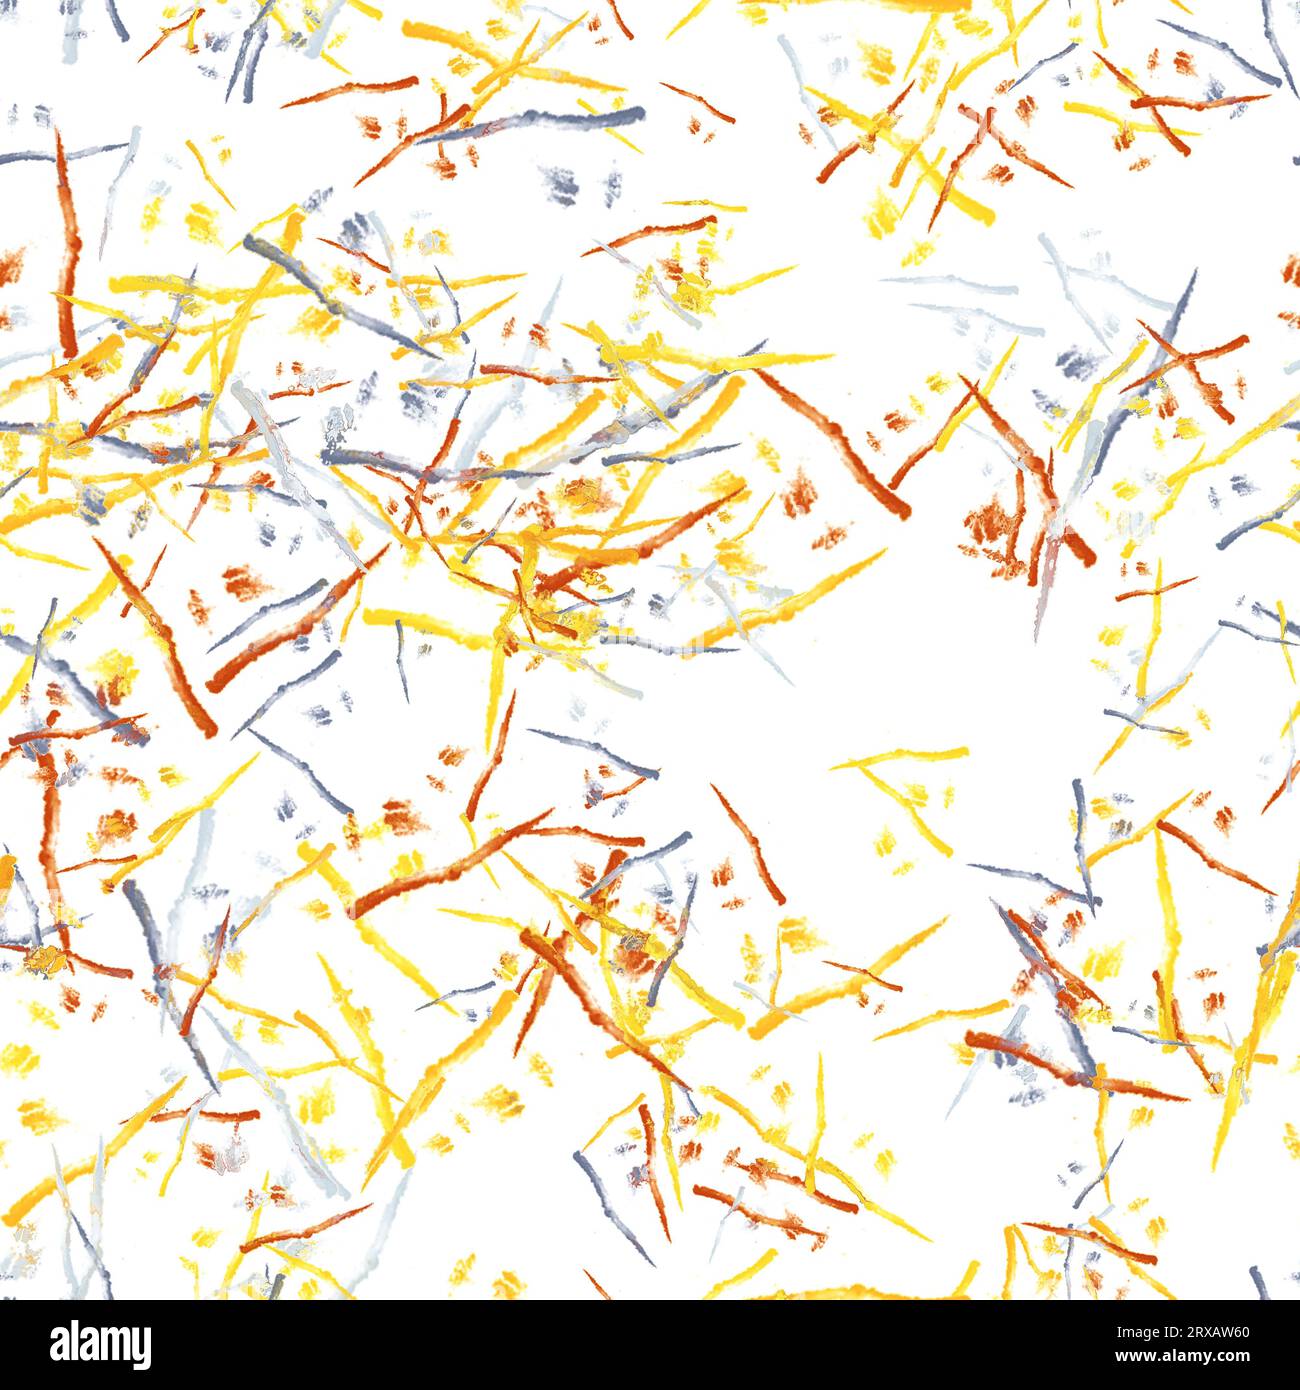 Tratti di pennello ad acquerello sottili astratti. Texture giapponese. Colori giallo, arancione e blu su sfondo bianco. Ripetizione senza cuciture Foto Stock